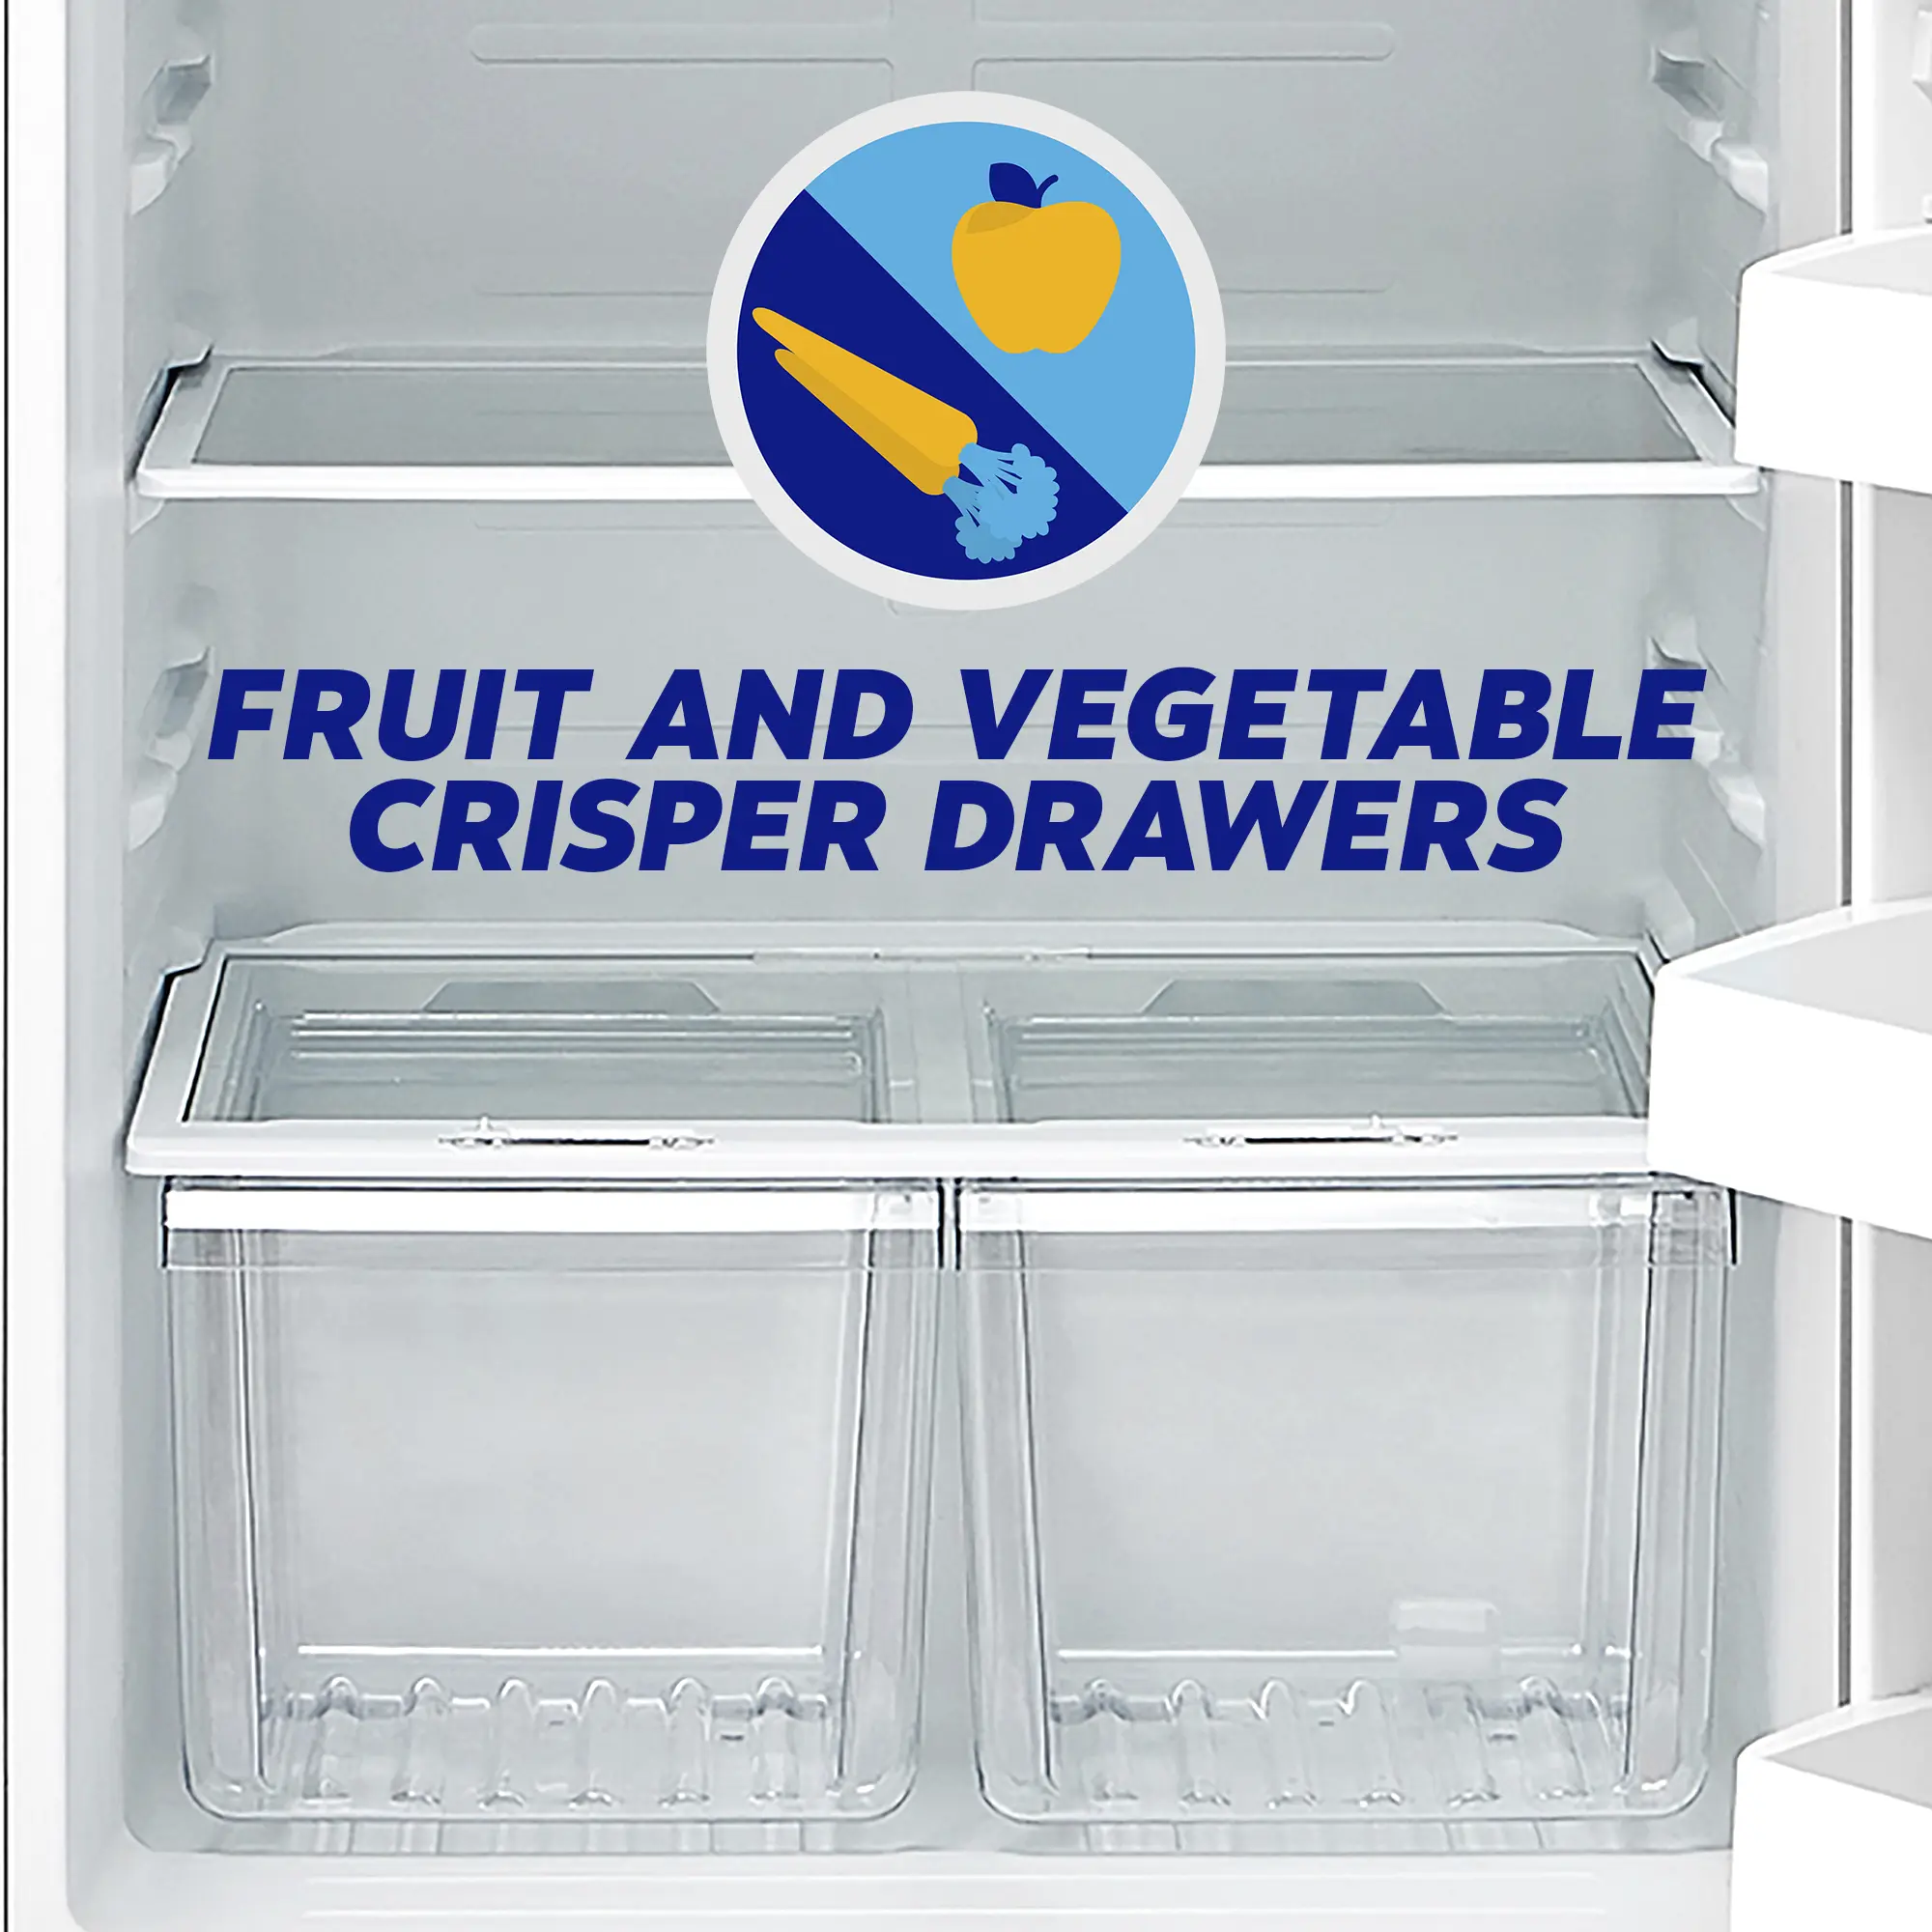 Fruit and vegetable crisper drawers